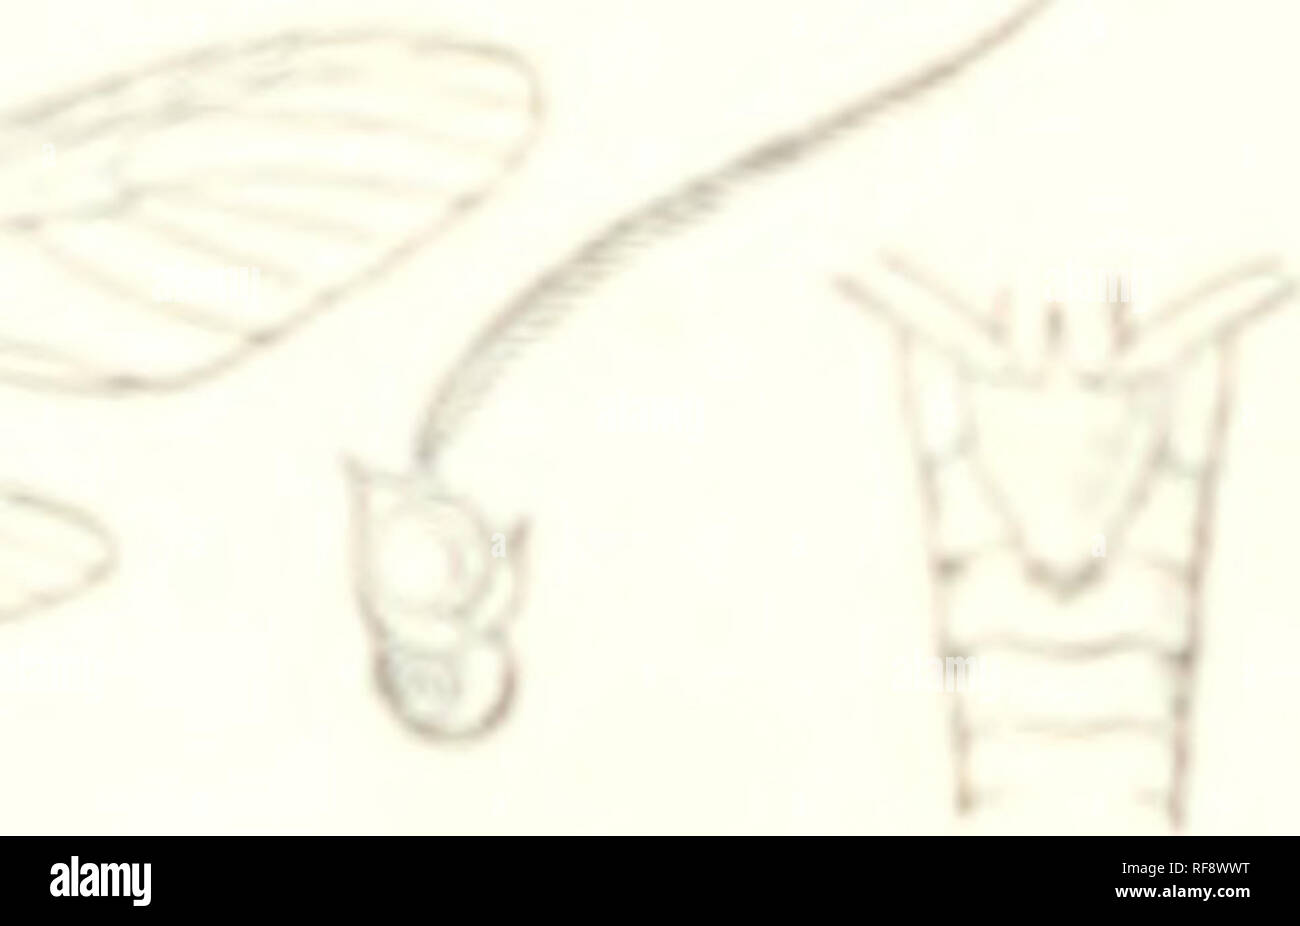 . Katalog der Lepidoptera Phalaenae im British Museum. British Museum (Natural History). Abt. der Zoologie; Motten; Lepidoptera. 1&gt; 70 SYNToMin.?:. Iliuil sviiif? HvMlifJO. tho Venen Muck; das Küstengebiet von orange über iniltllc tlu *t'rmin: Il piirt bhu-k. Ilah. liui. iviv, Corvico ((iurltfiji), 2 cT, Typo. Hep. IM milliin. : &Gt;&gt;). Rhynchopyga mcisteri. (I'lato X. li^'. 11.) Js4"/&gt; ffrii II^ n.-'Ti, ll. r^'. Ein. .Sh Arg. xM|). I'kI (lS."&lt; l); Kirb; r. Kinderbett. II ". p l-JT. (Auf edj^ mit weißen hcaUs, tlie ersten vier sej^ Nu'nt Ed. s Crimson unten, des Ist-ed^ ed mit Weiß. Stockfoto